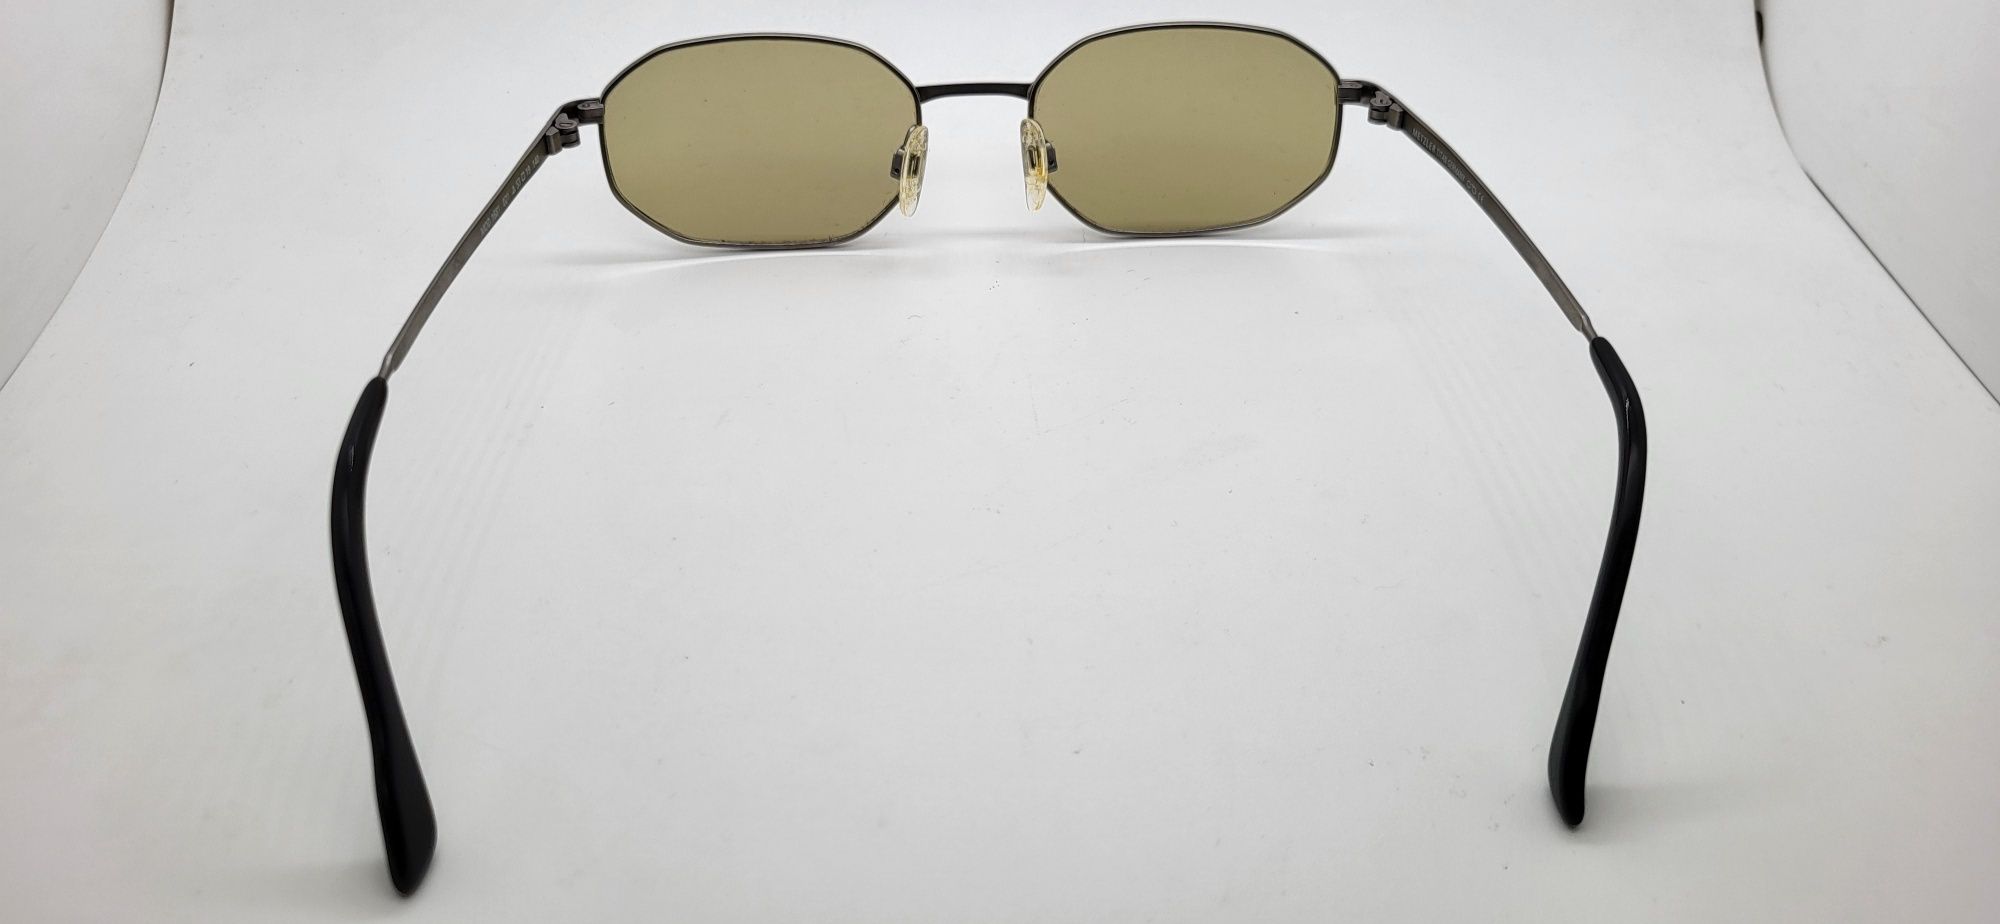 Metzler okulary tytanowe przeciwsłoneczne